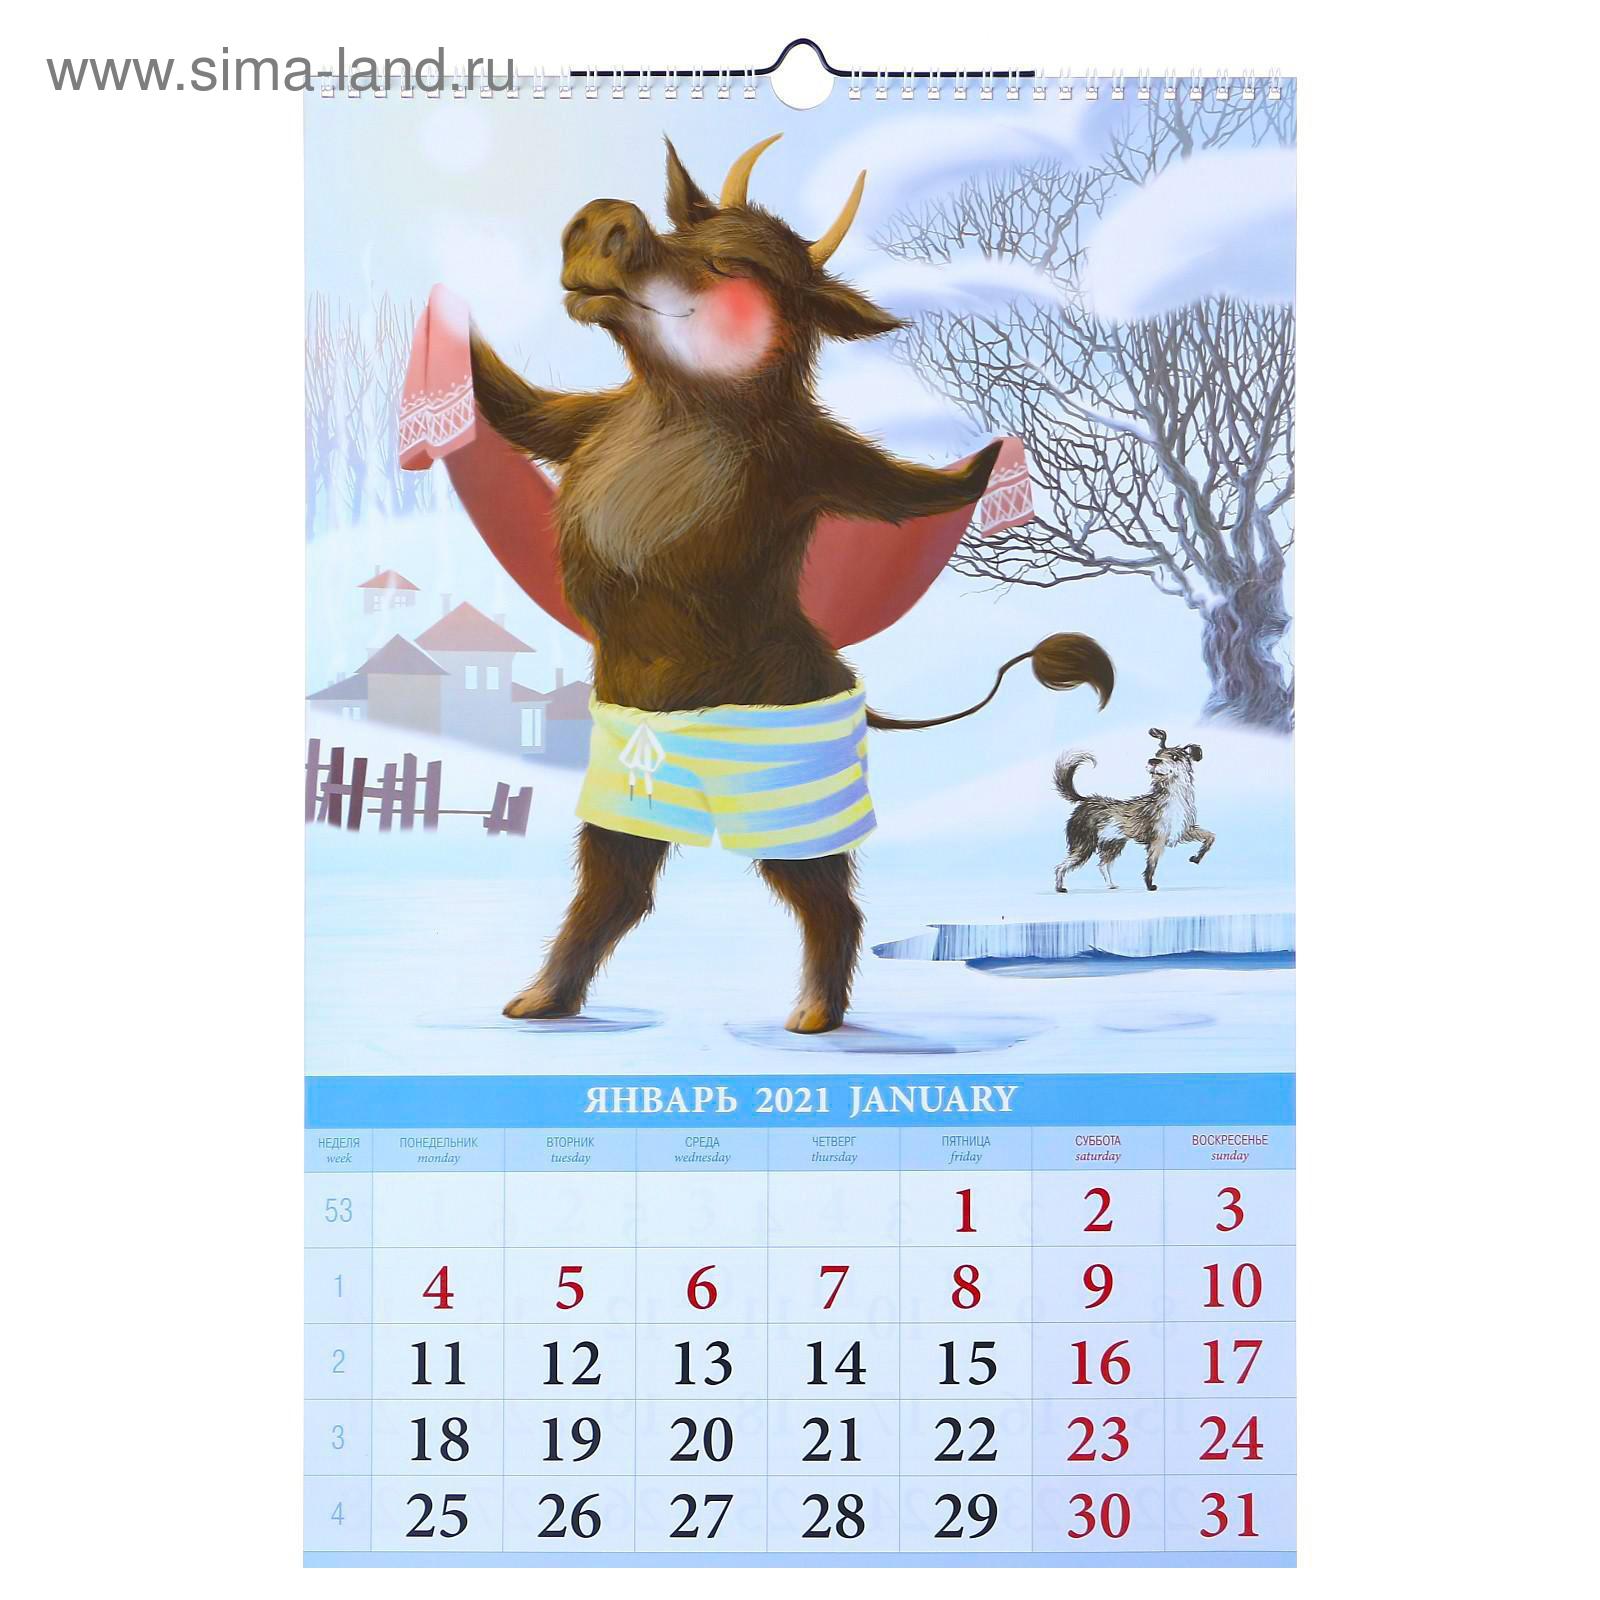 картинки для календаря на каждый месяц года